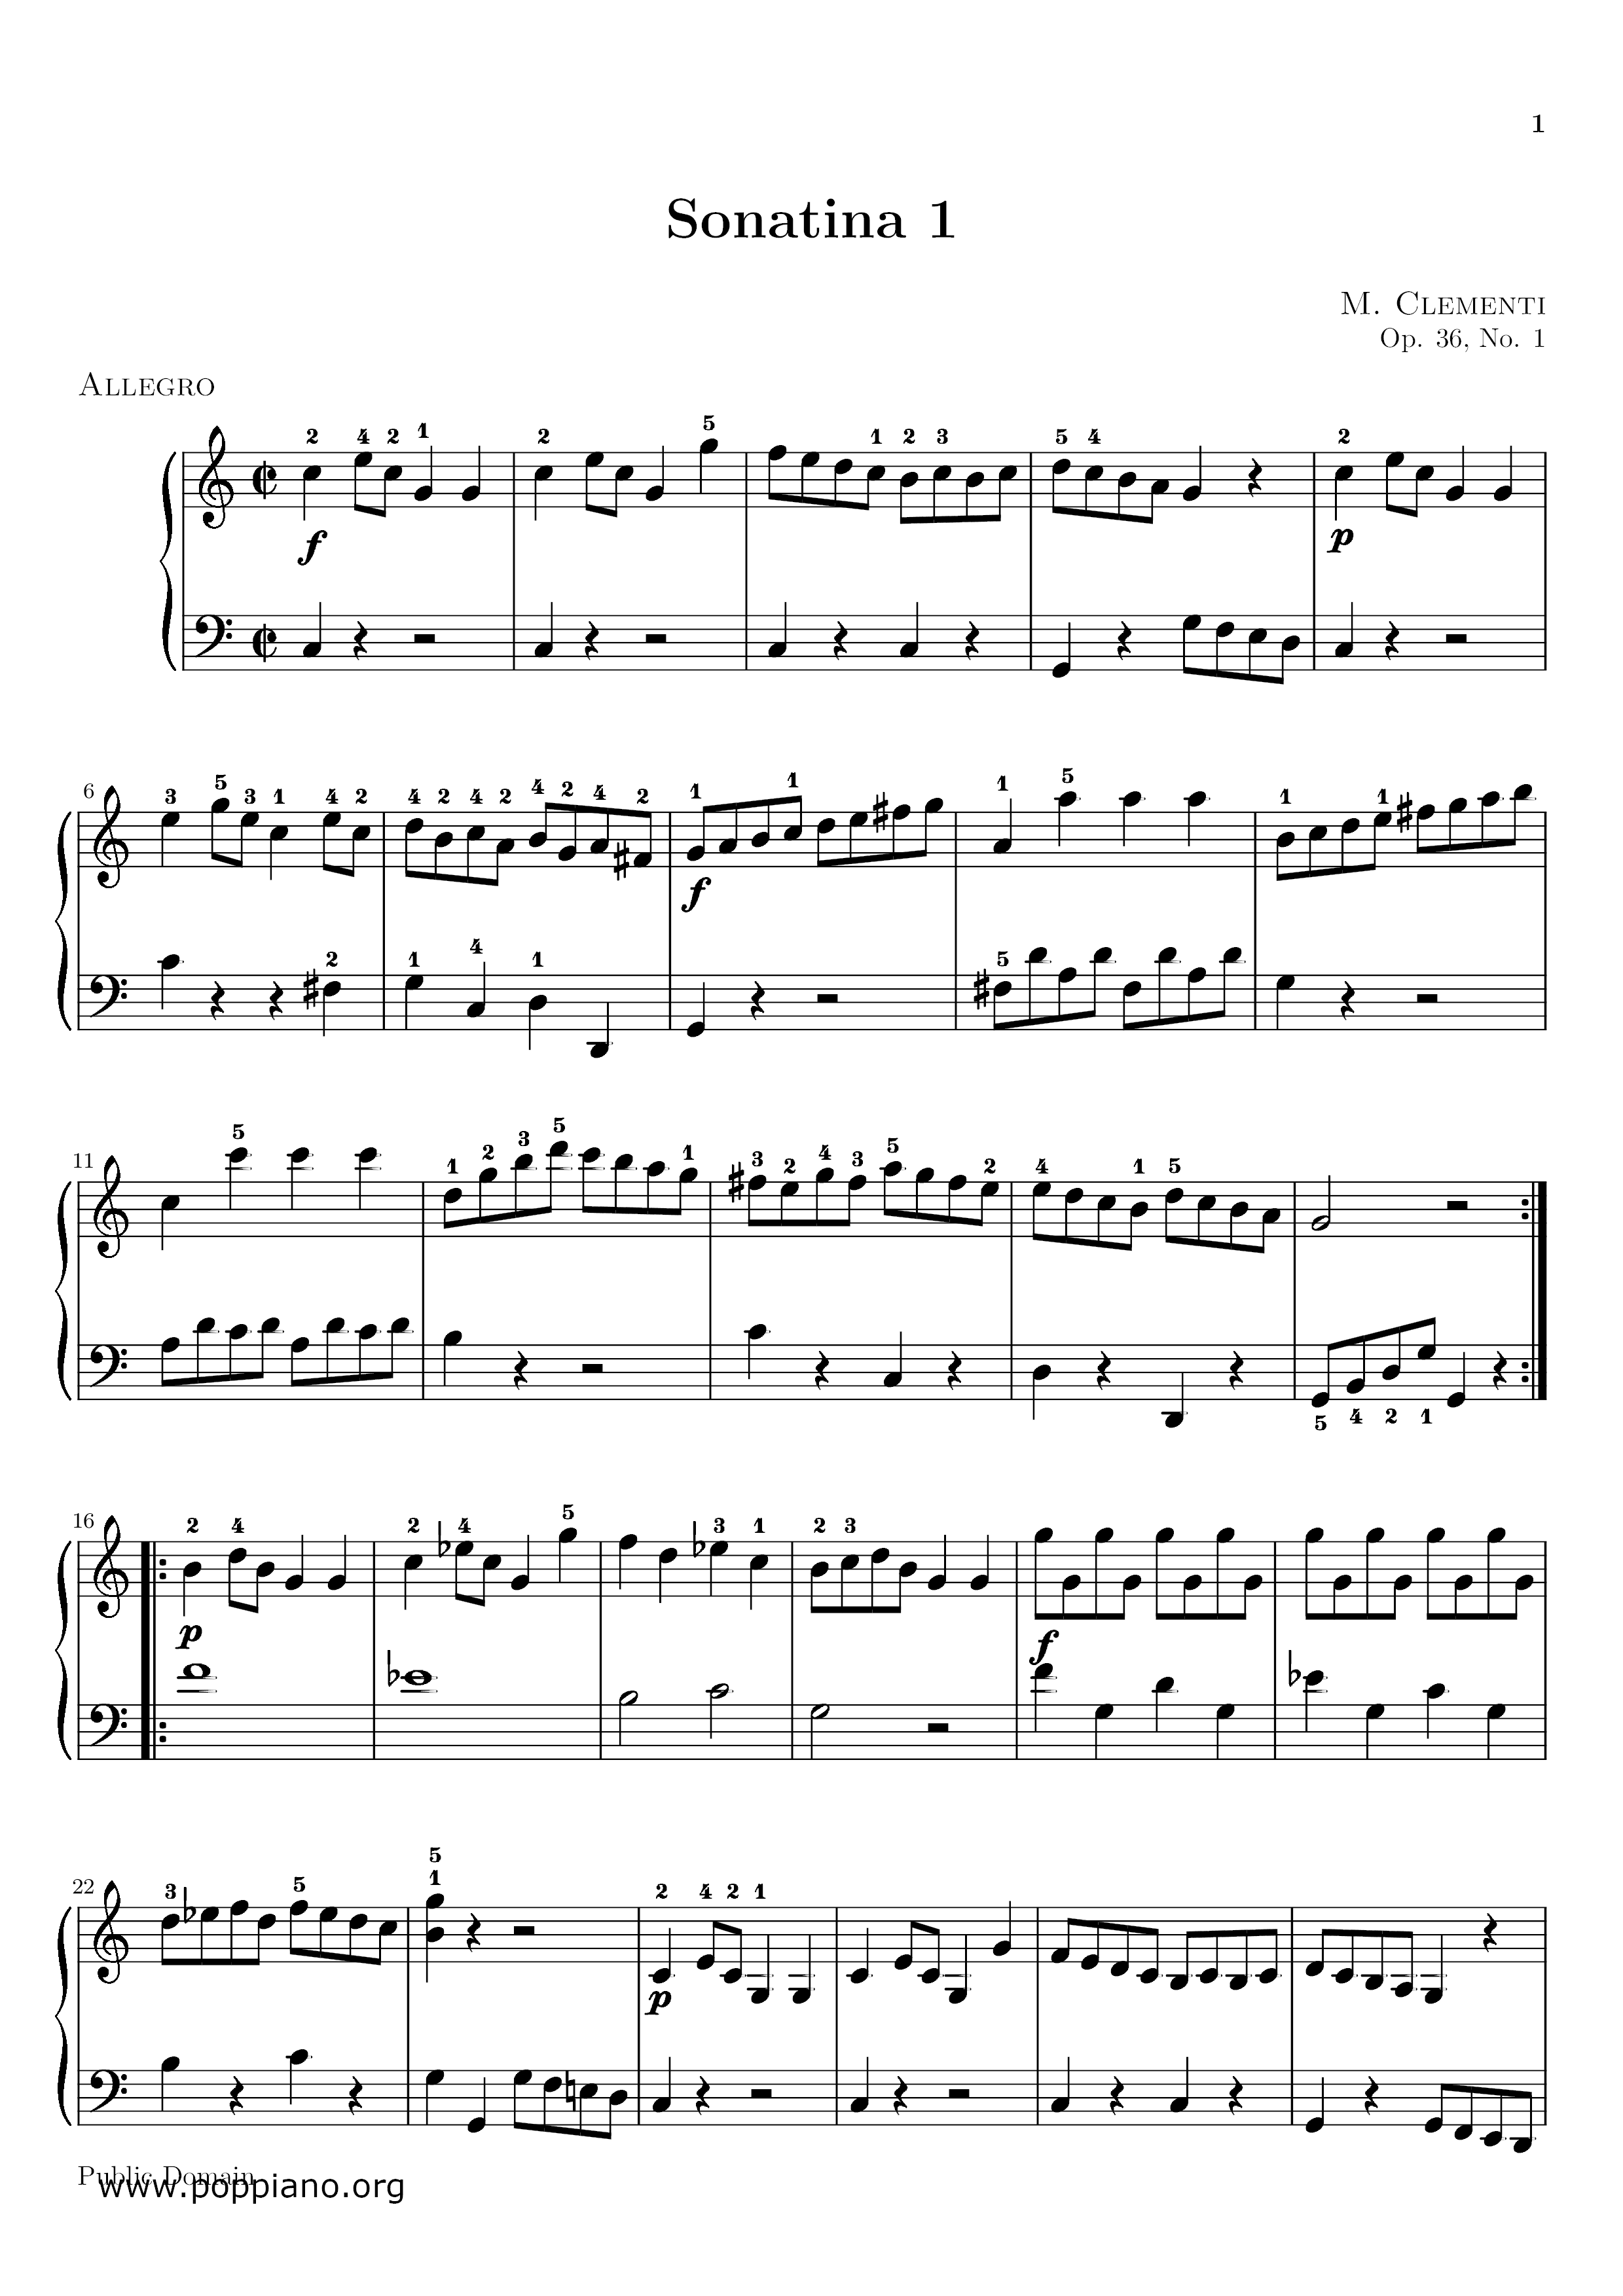 Sonatina In C Major, Op.36, No.1ピアノ譜